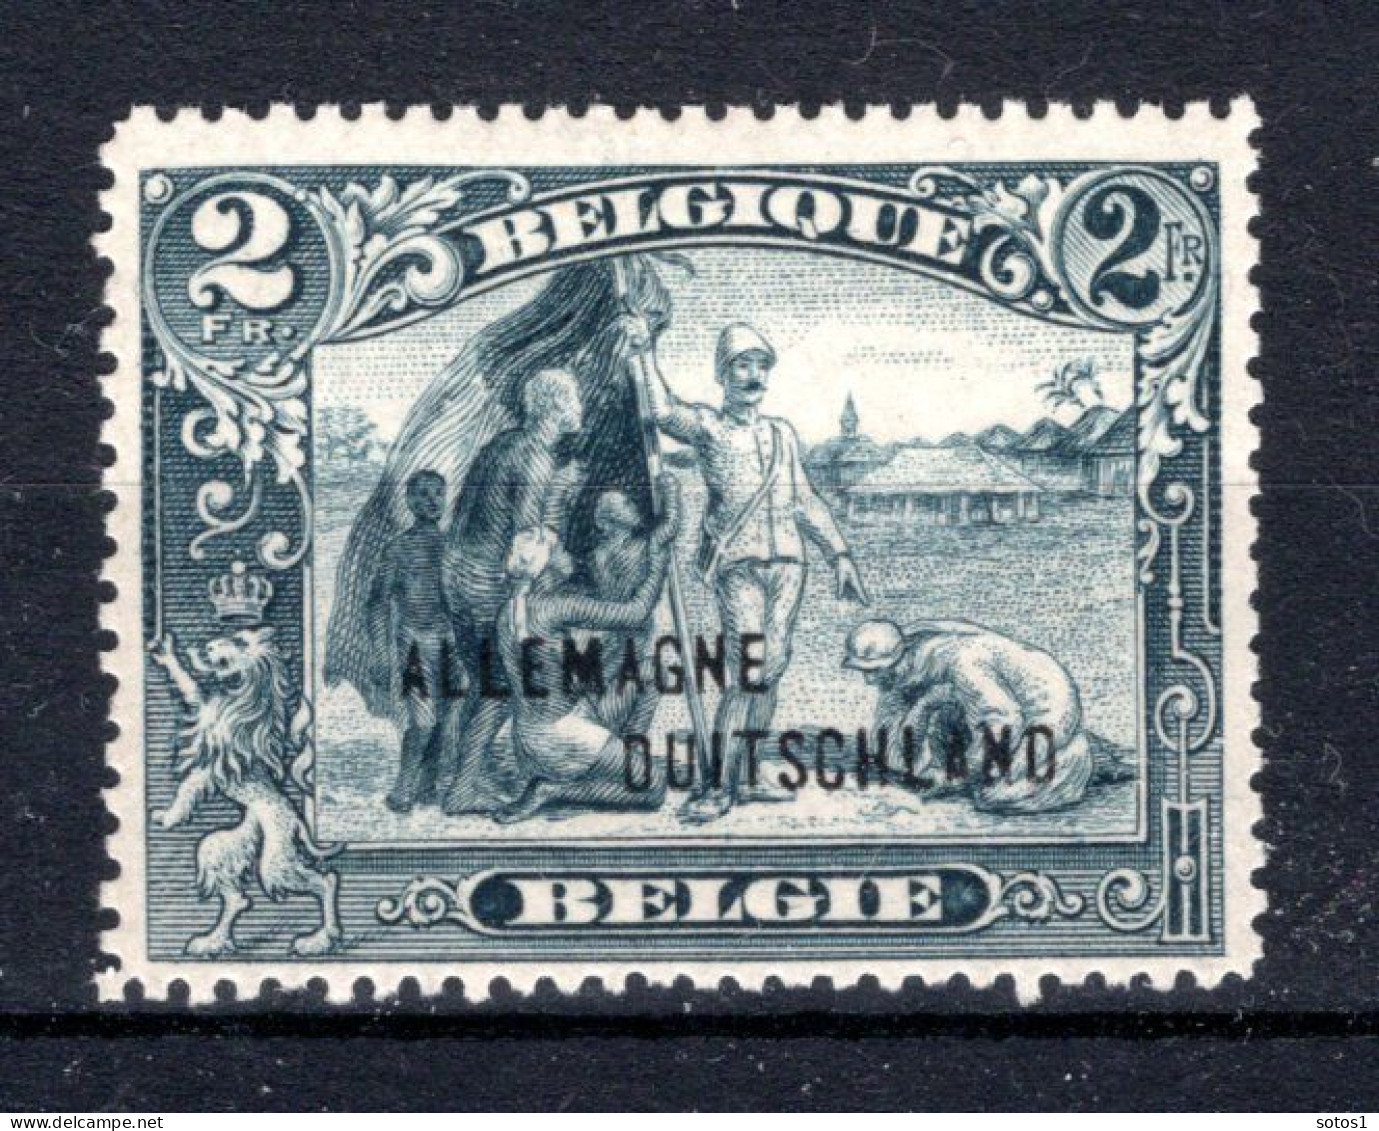 OC52A MNH 1920 - Postzegels Met Opdruk Eupen & Malmedy - Sot - OC38/54 Belgische Besetzung In Deutschland